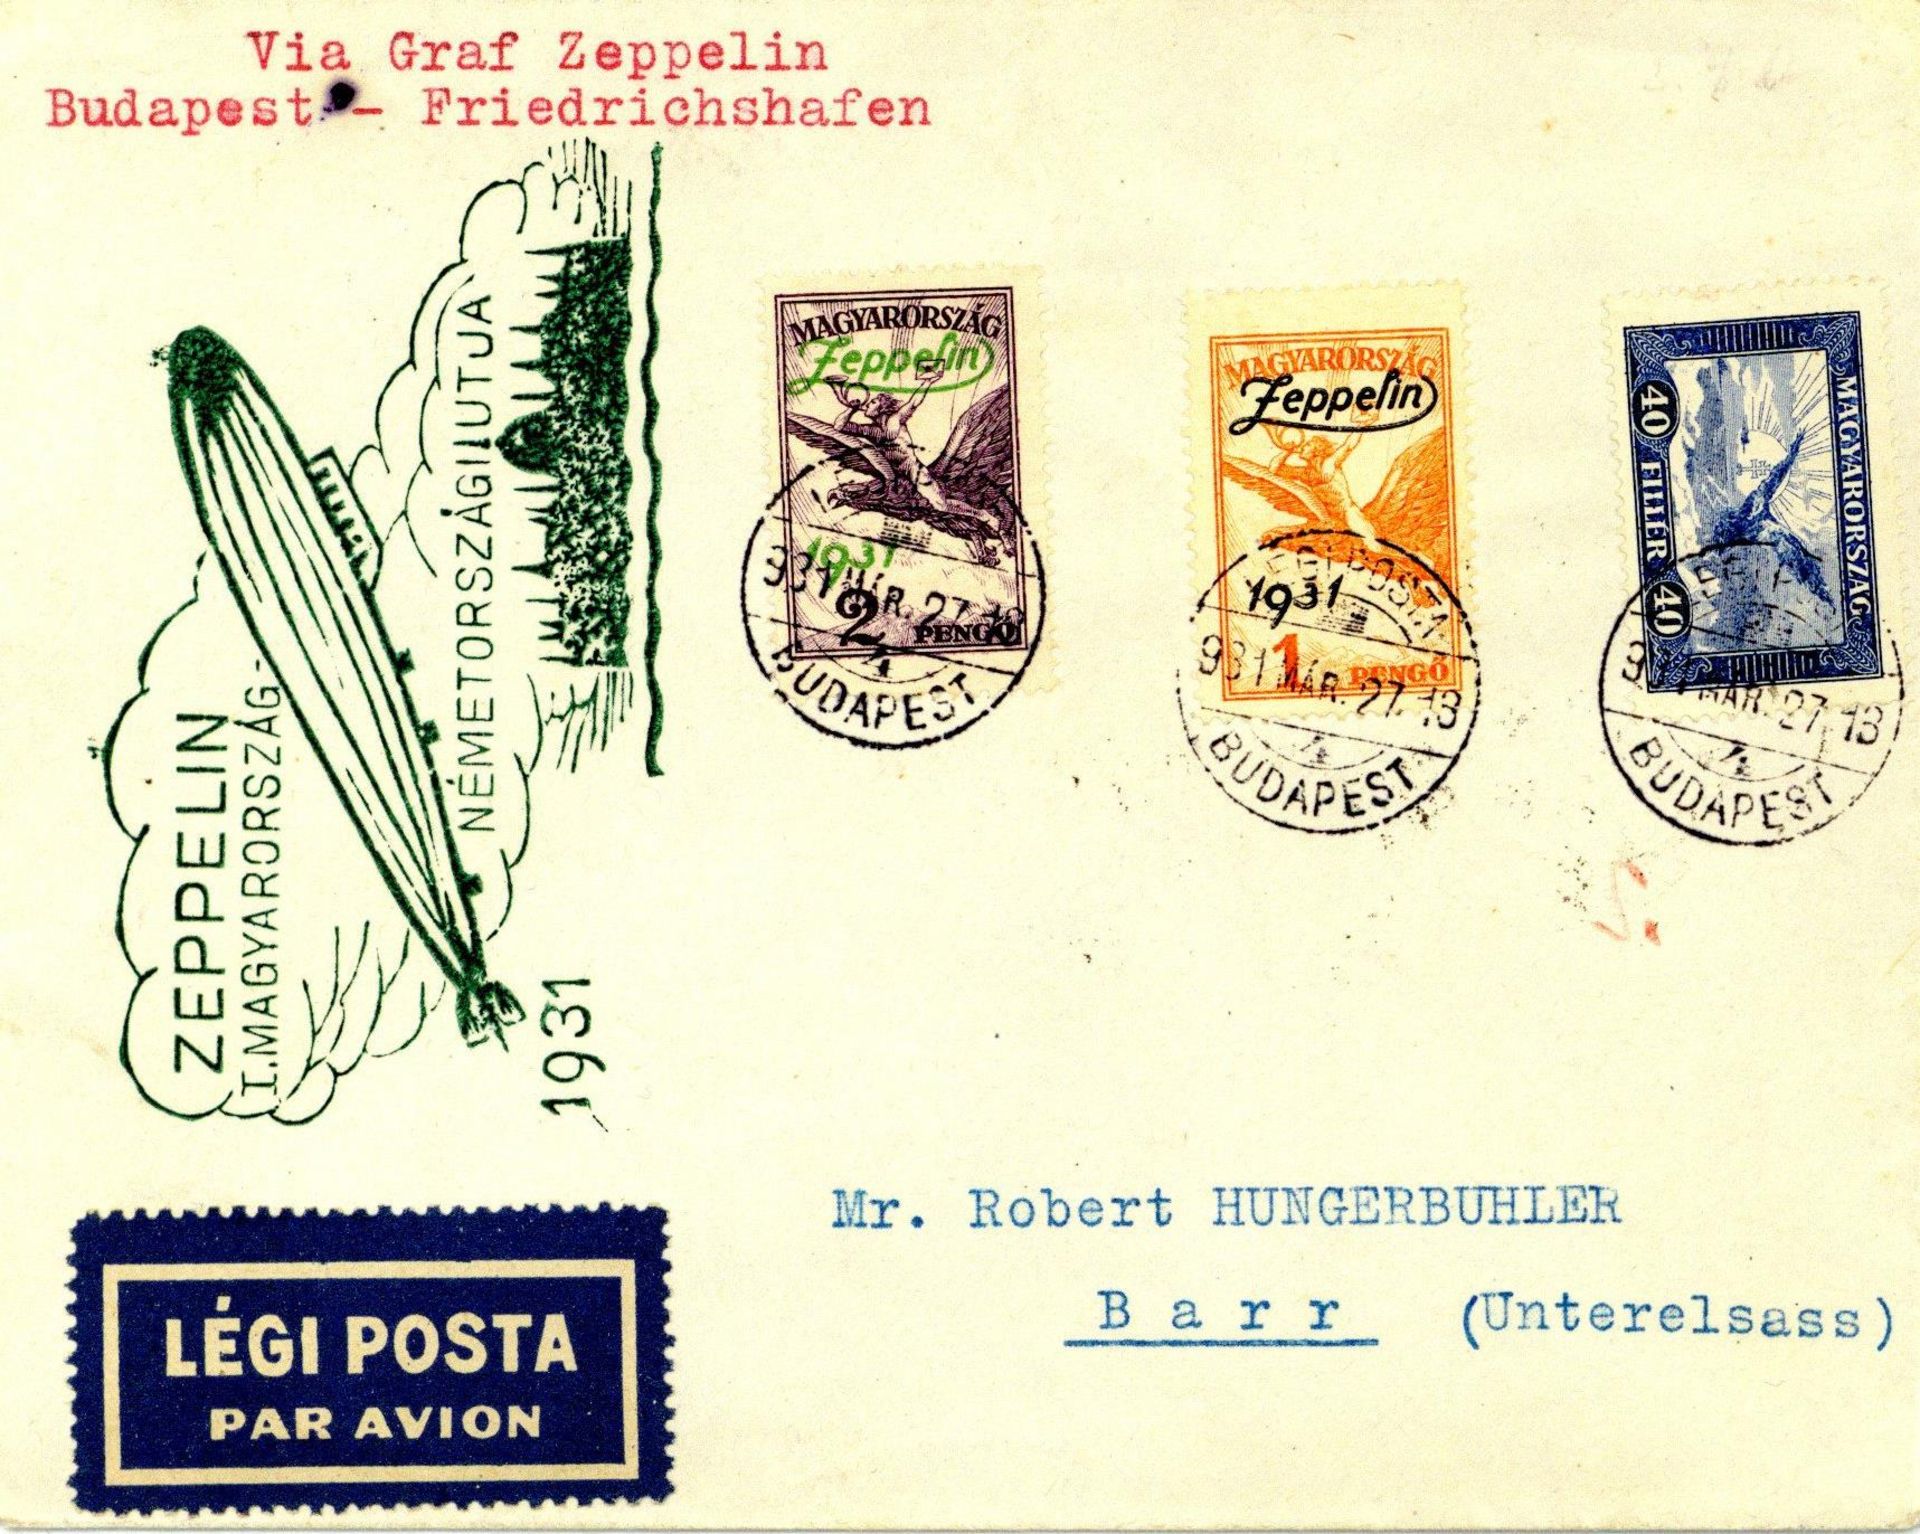 1931 Zeppelinpost der Ungarnfahrt von Budapest via Friedrichshafen nach Barr/Elsass